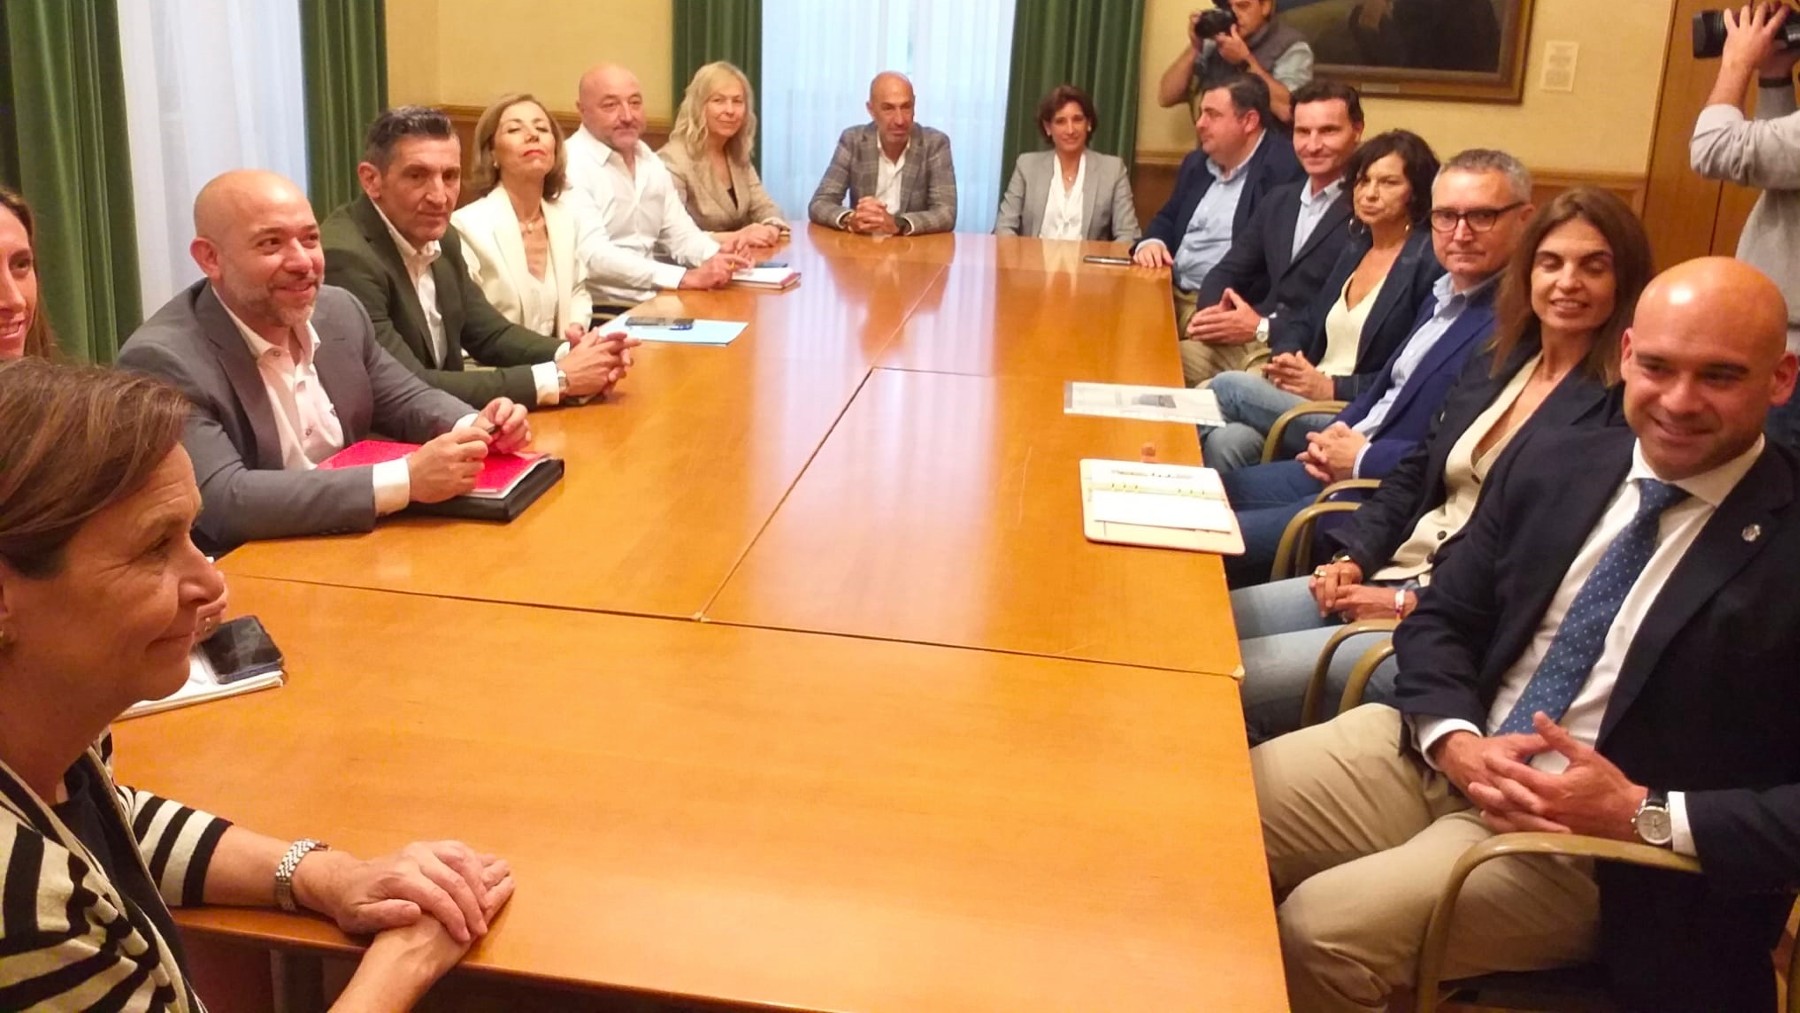 La alcaldesa de Gijón, Carmen Moriyón, presidiendo una reunión. (Foto: EP)